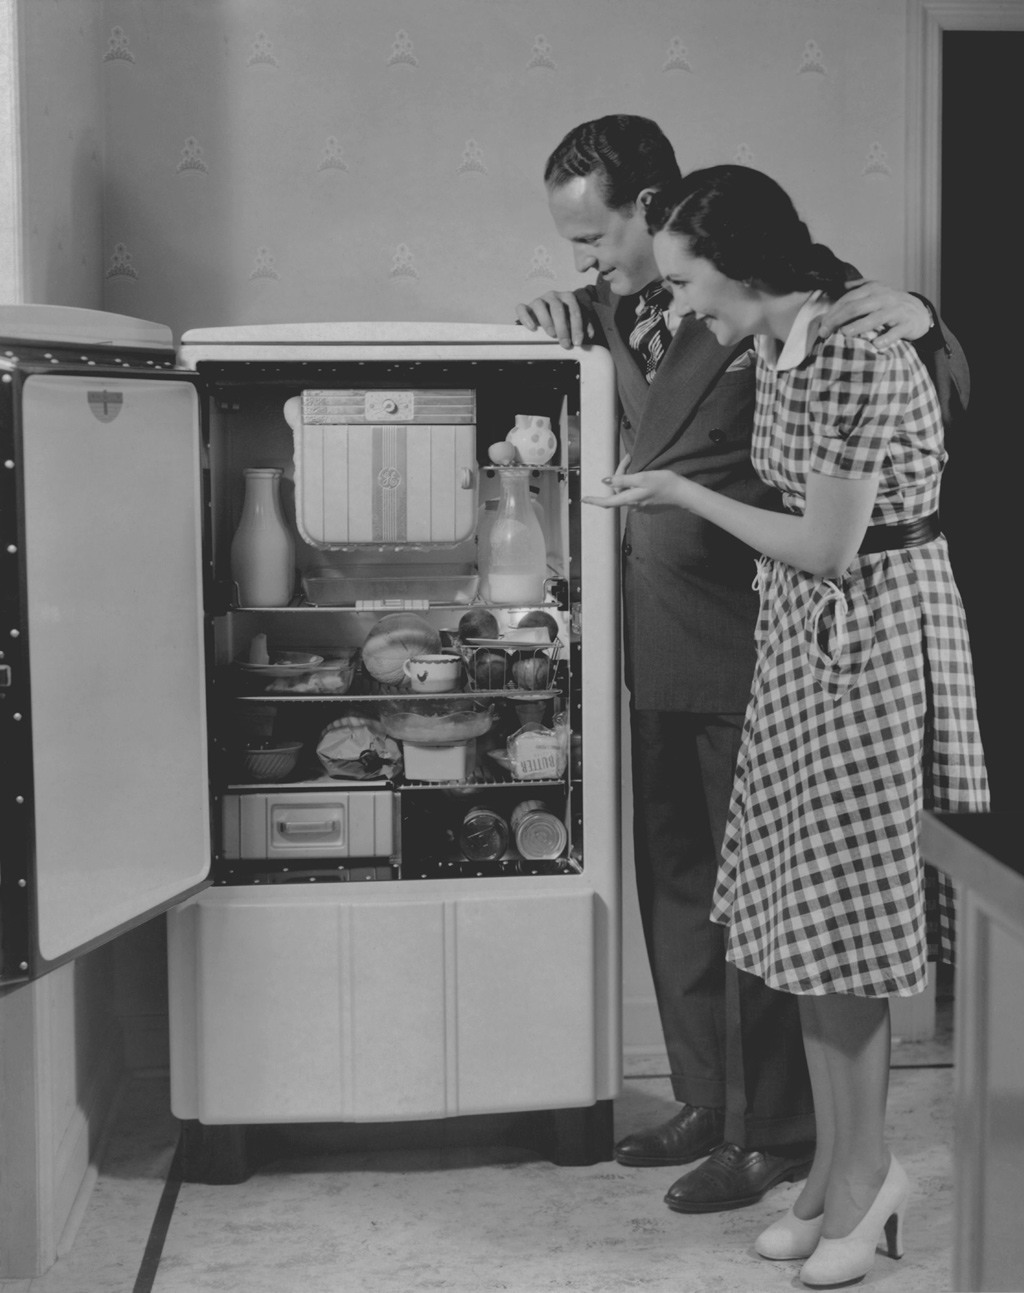 ثلاجة كهربائية في أربعينيات القرن العشرين. صورة: FPG/Getty Images